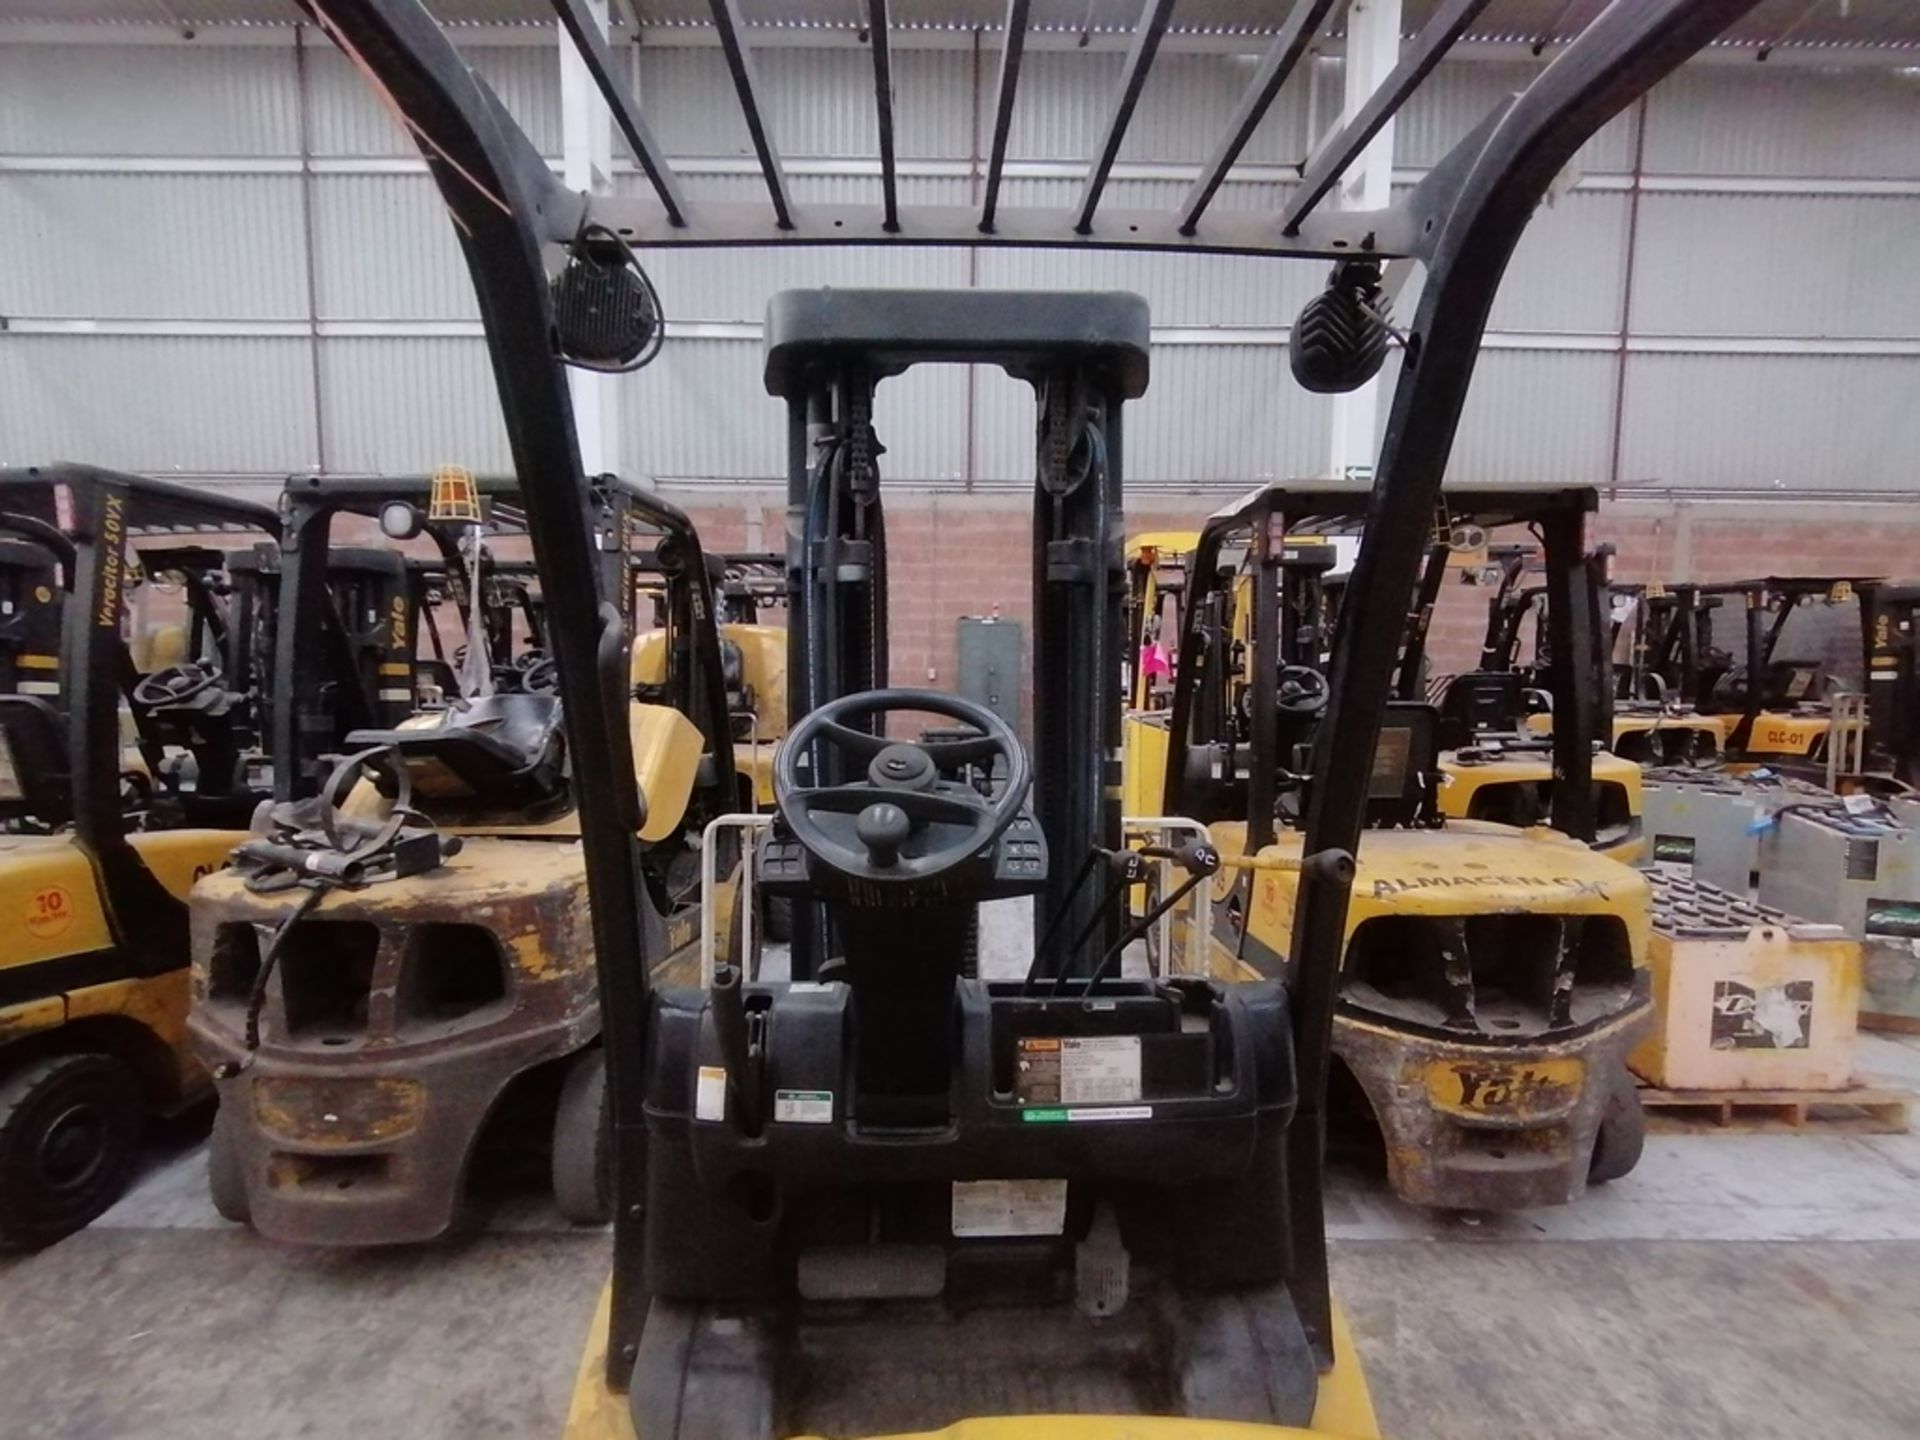 2016 Yale Forklift, model GLP050VXNDAE090, 4,750 lb capacity - Image 21 of 45